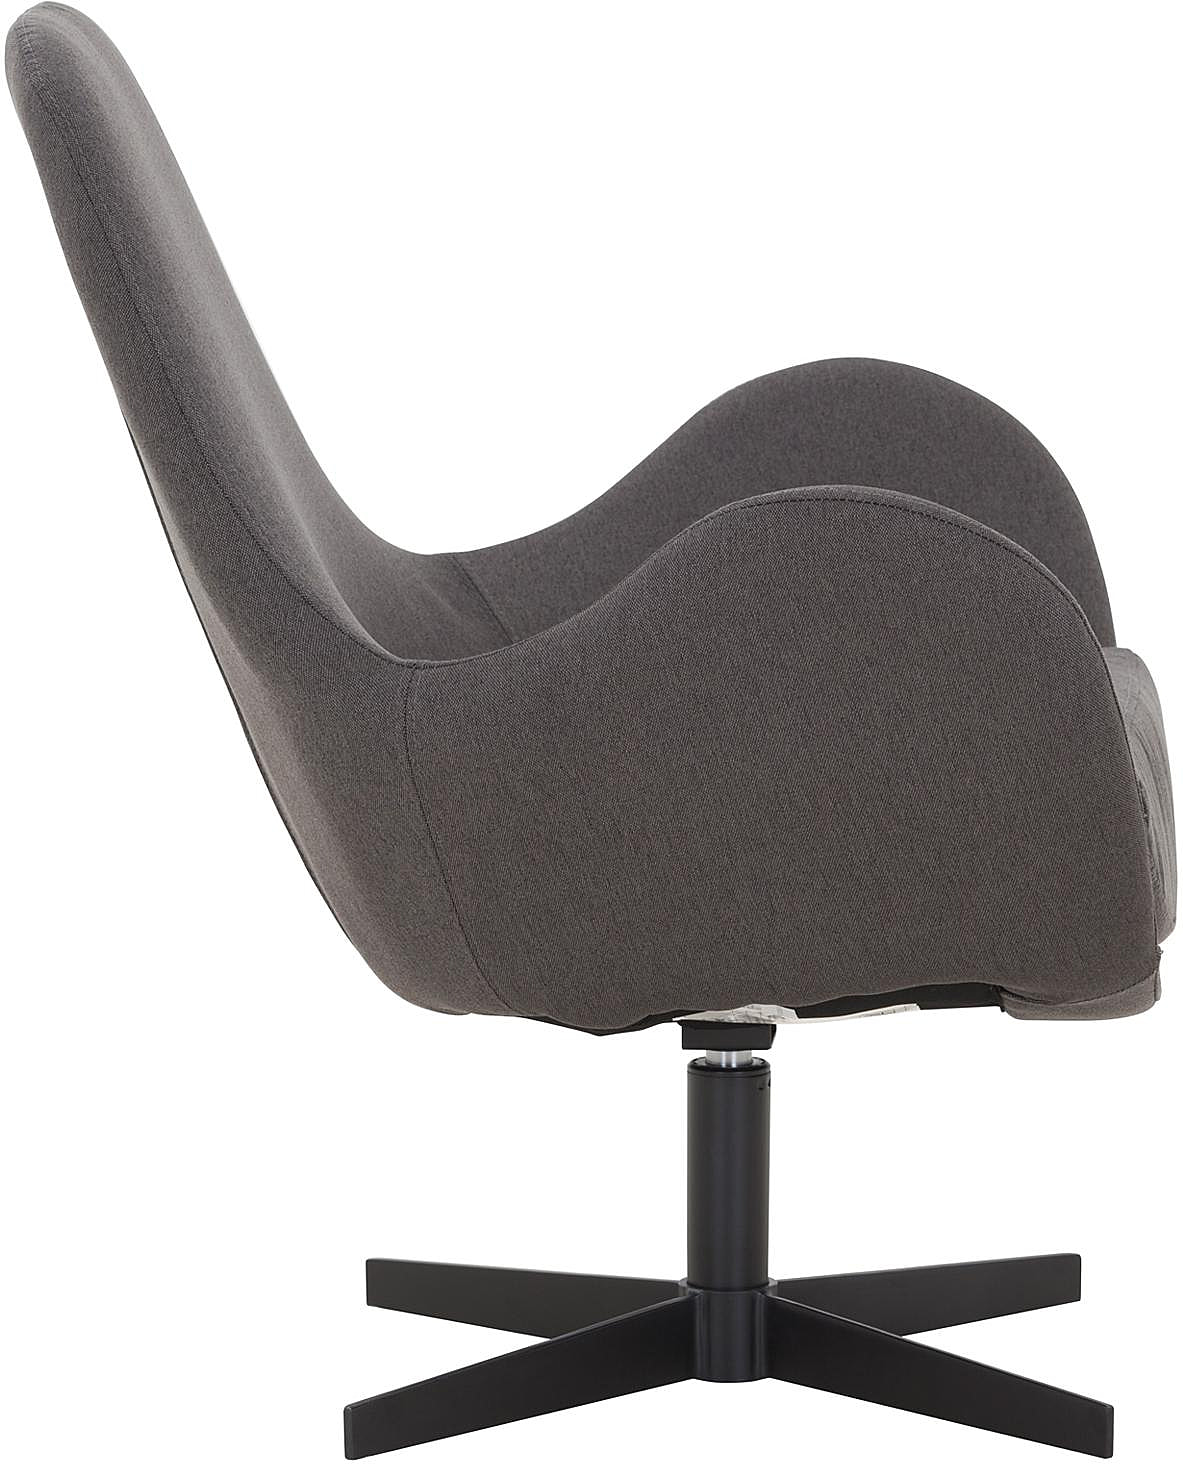 SalesFever Sessel mit Drehfunktion und Sitzkissen in extra dickem Dunkelgrau